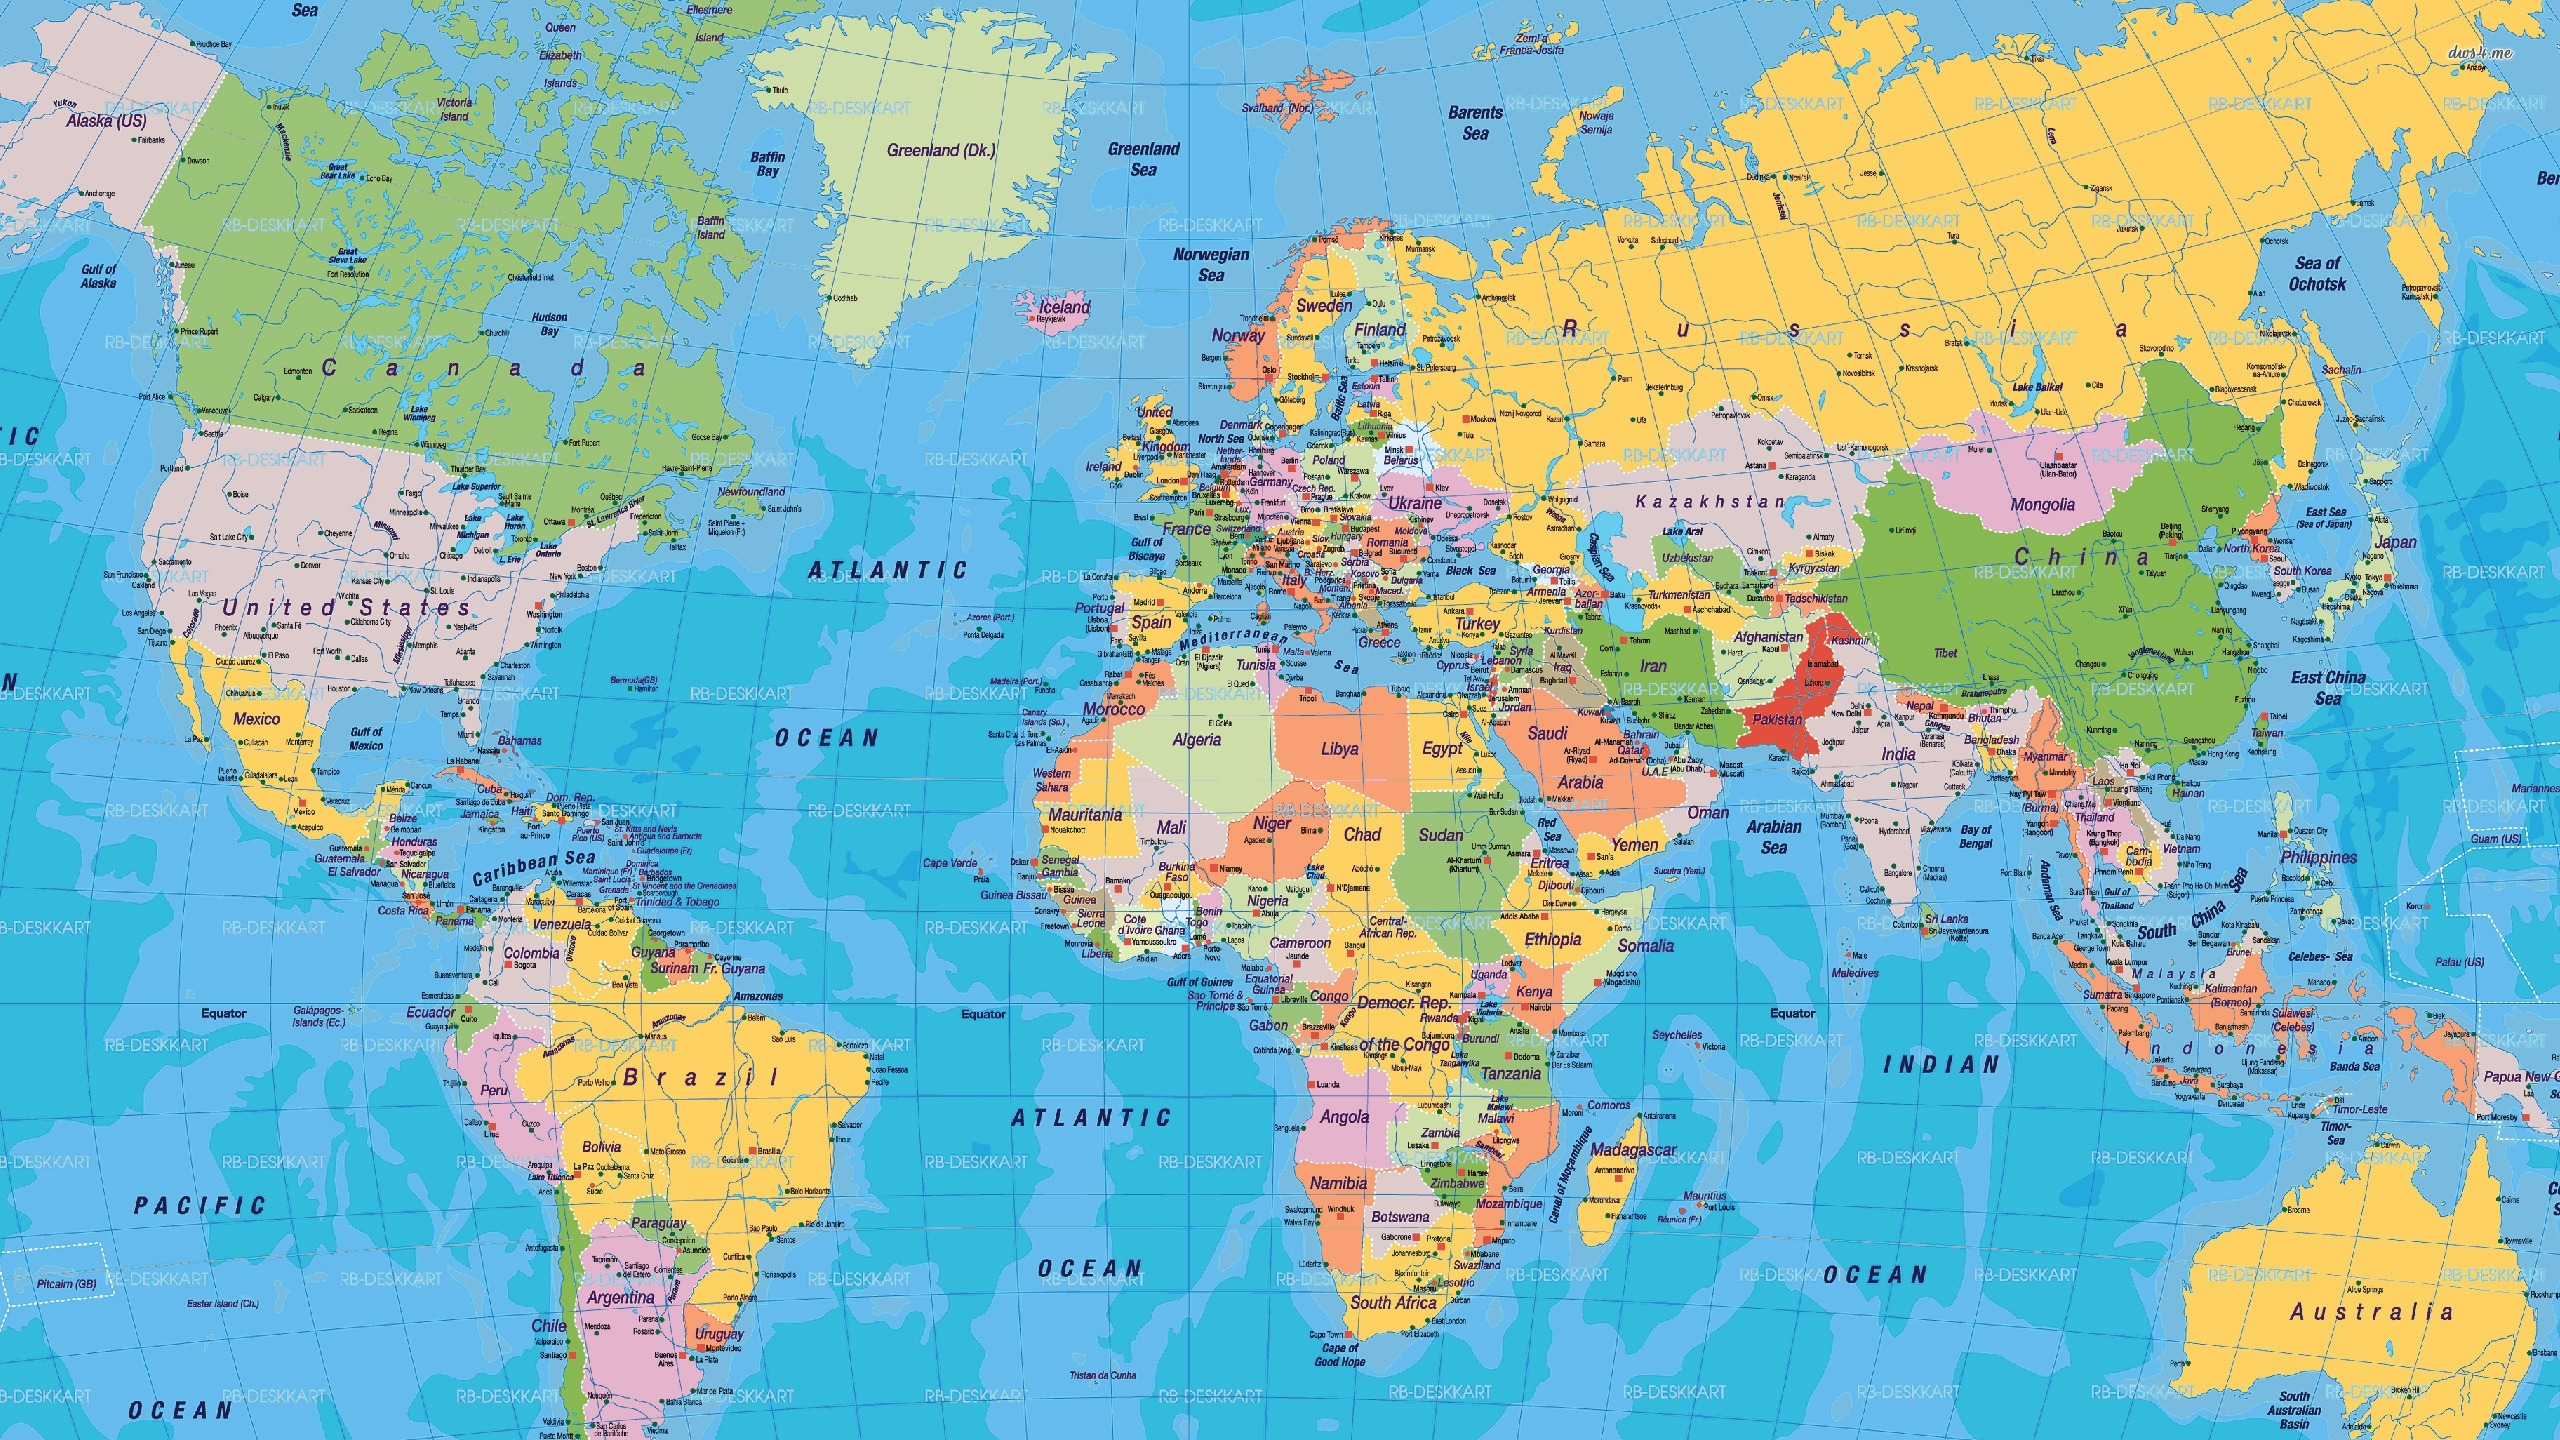 world map - free large images